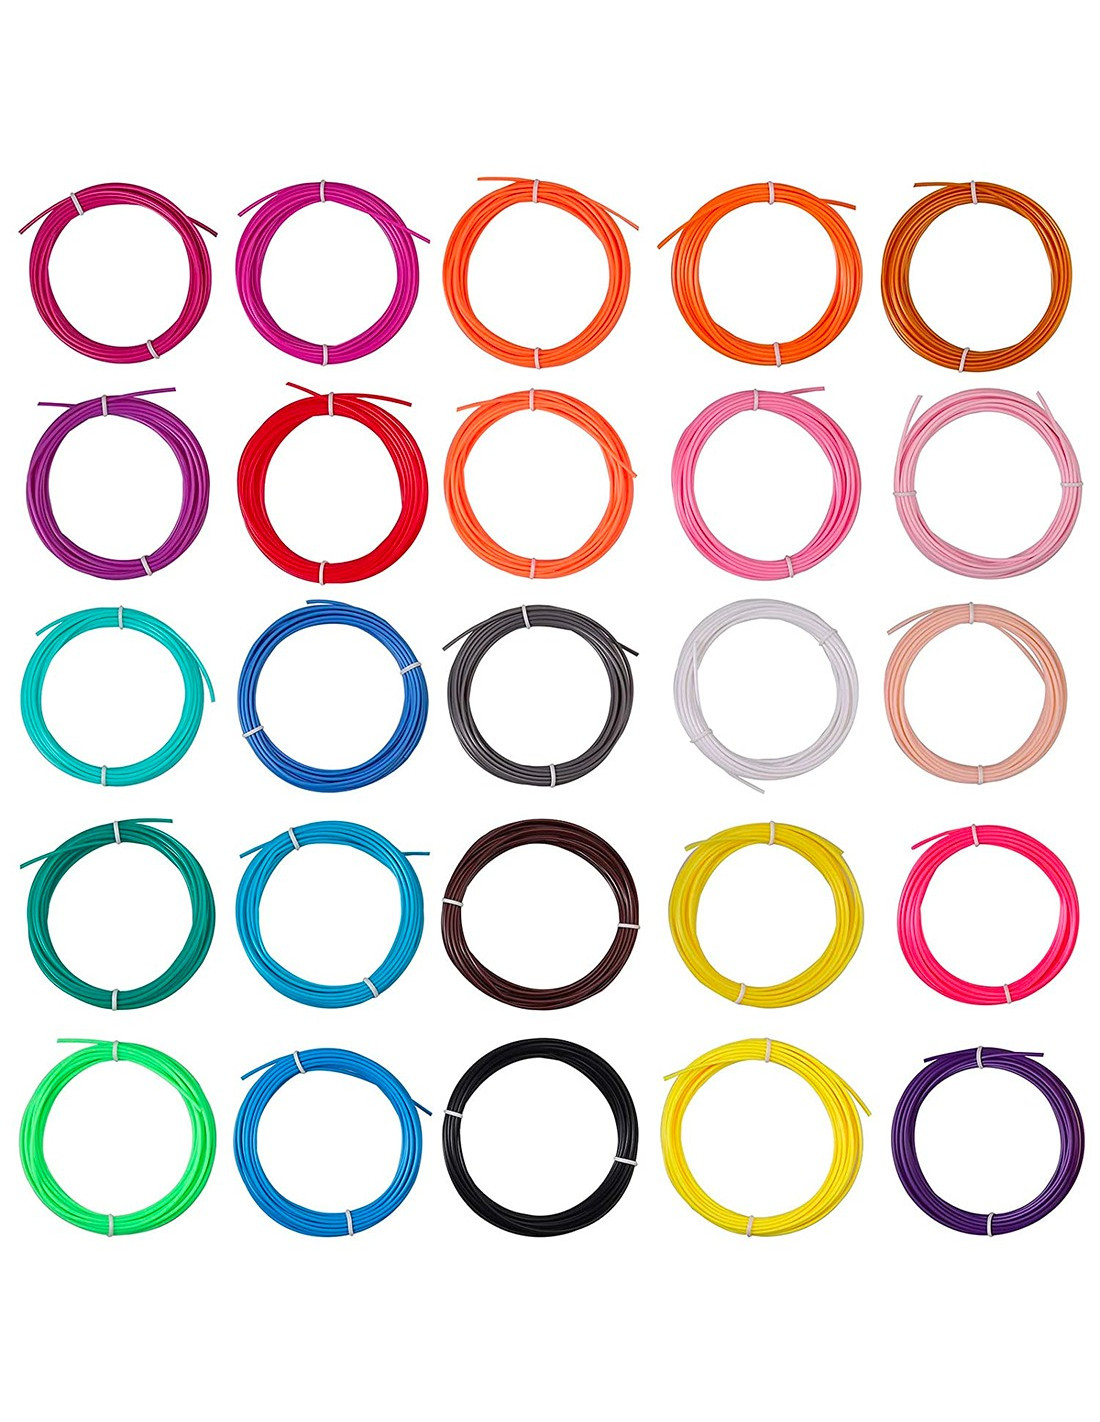 Ricariche Di Filamento Pla Per Penna 3d, 20 Colori, 5m Per Colore